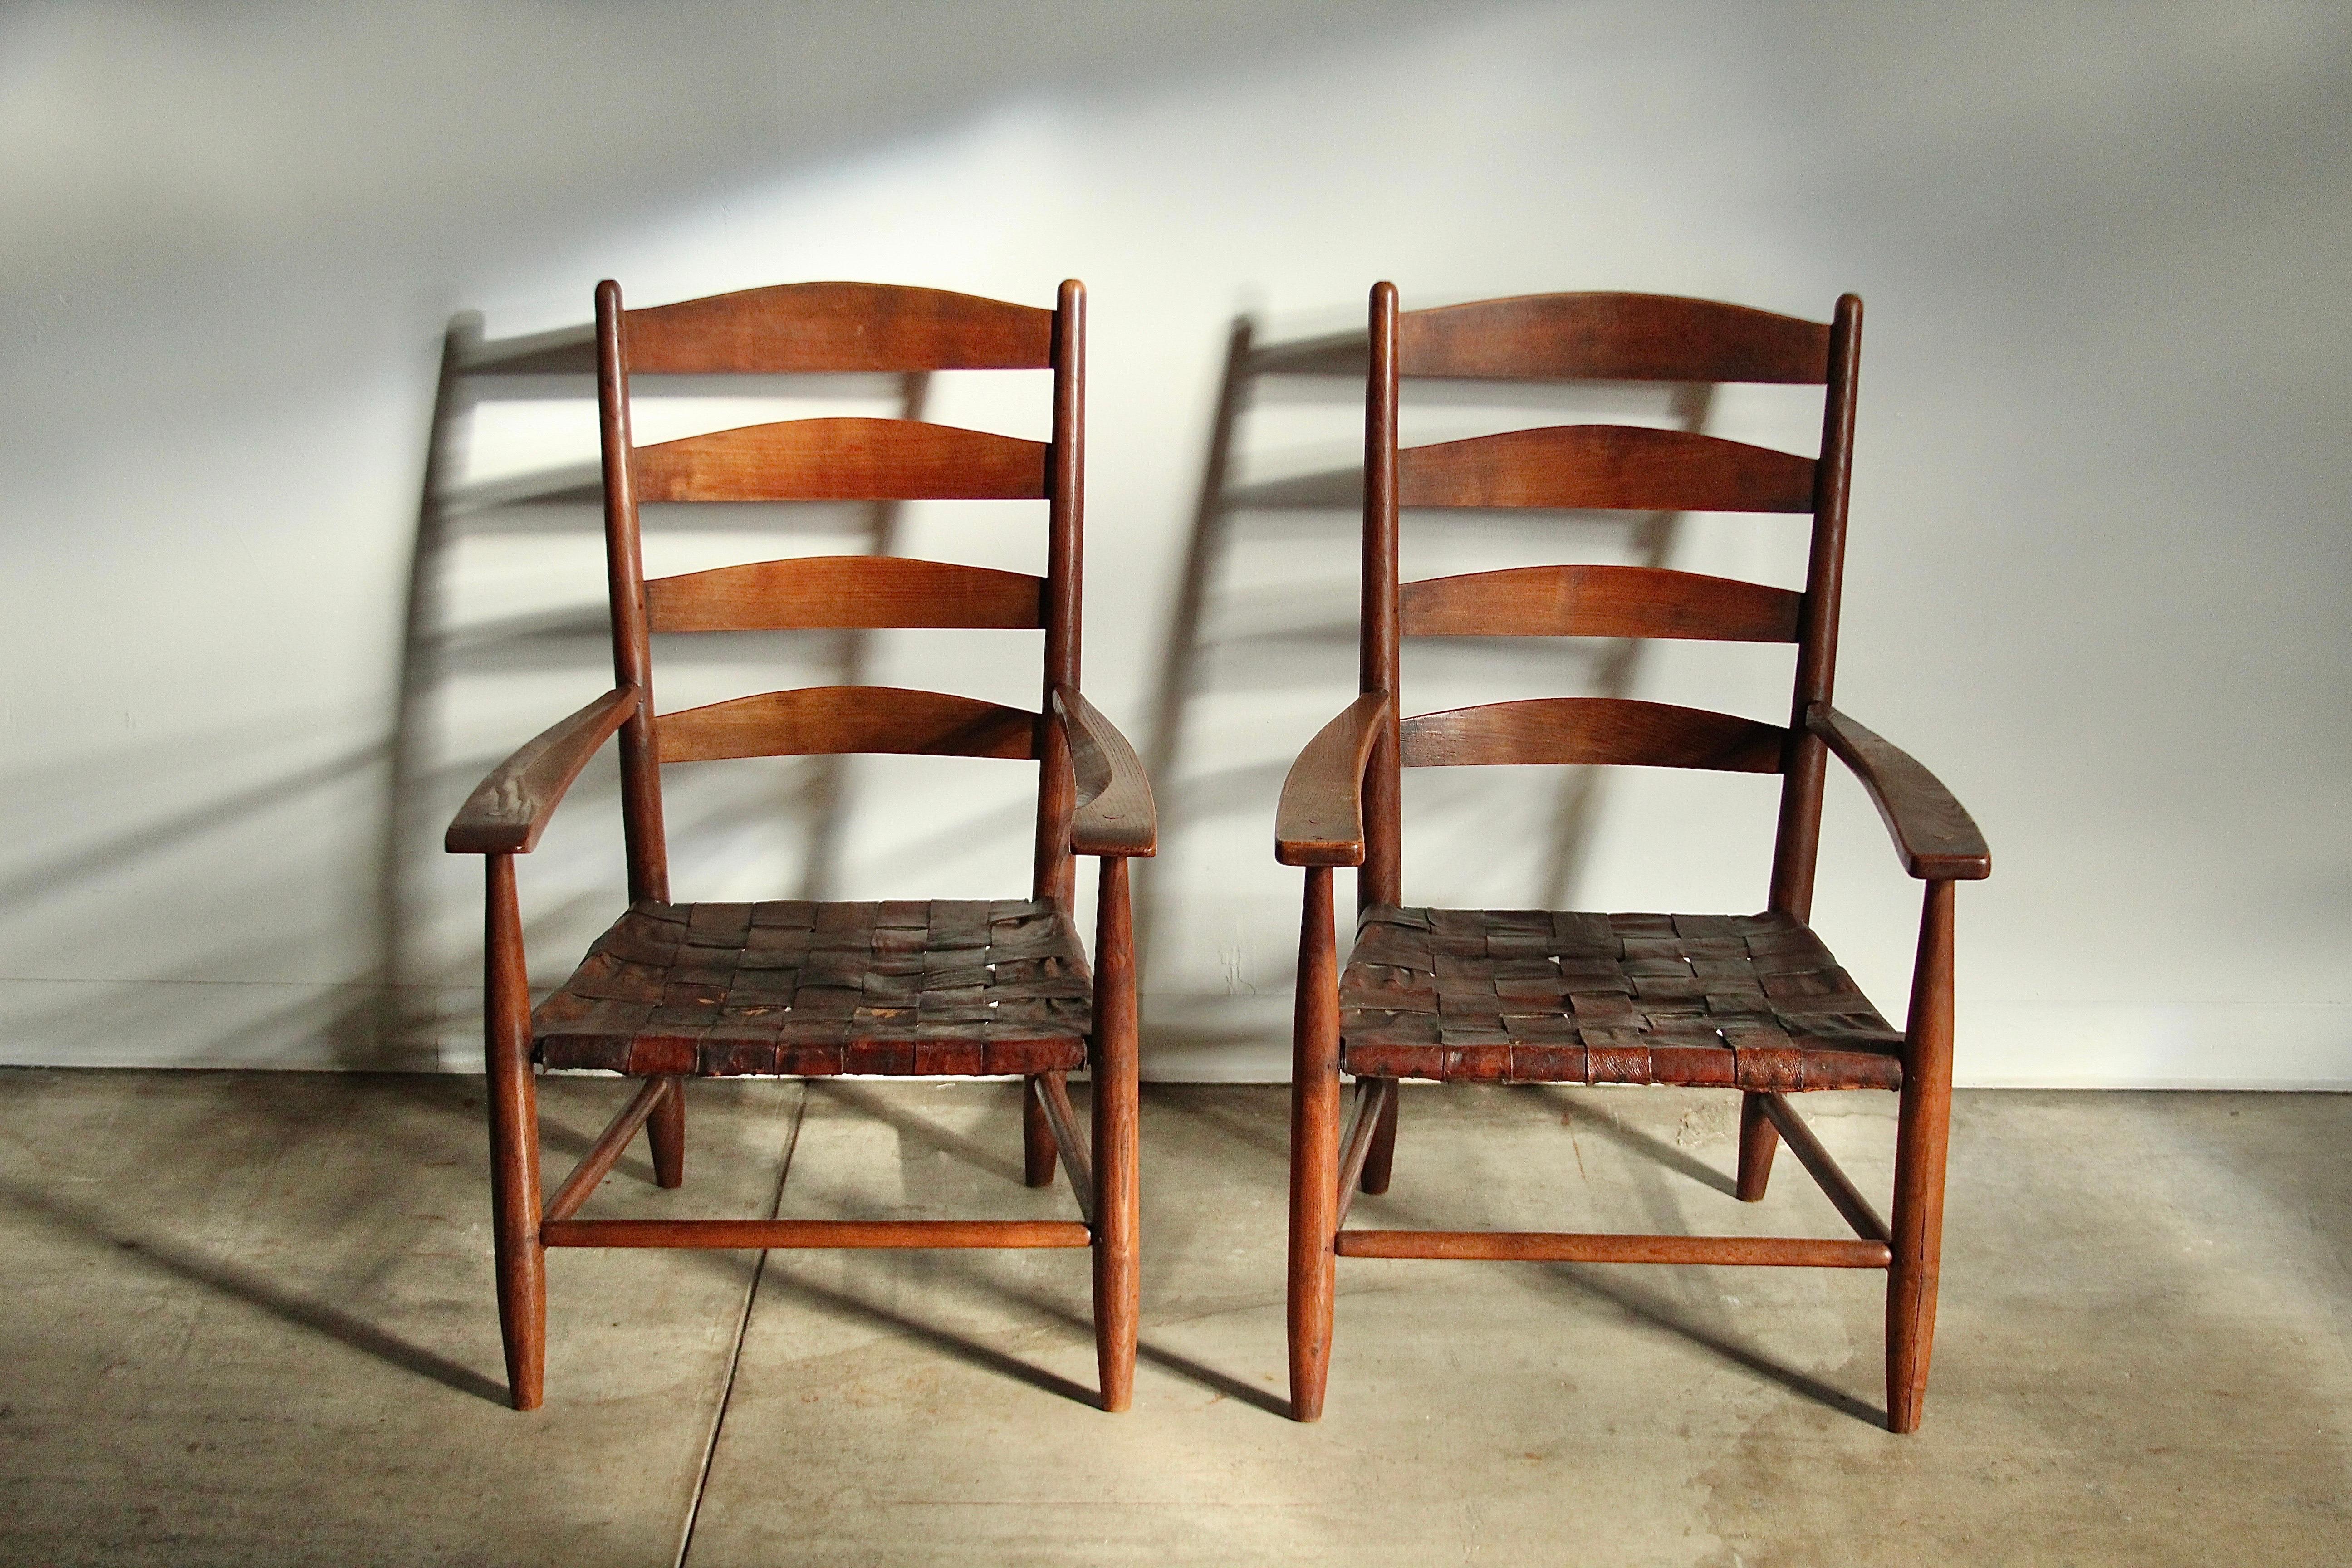 Une véritable paire d'artefacts ! Cette paire de grands fauteuils de style Shakers a été conçue et fabriquée par Gordon Russell vers 1904 à Broadway, en Angleterre. Les chaises sont dotées d'une incroyable construction à chevilles, réalisée à la